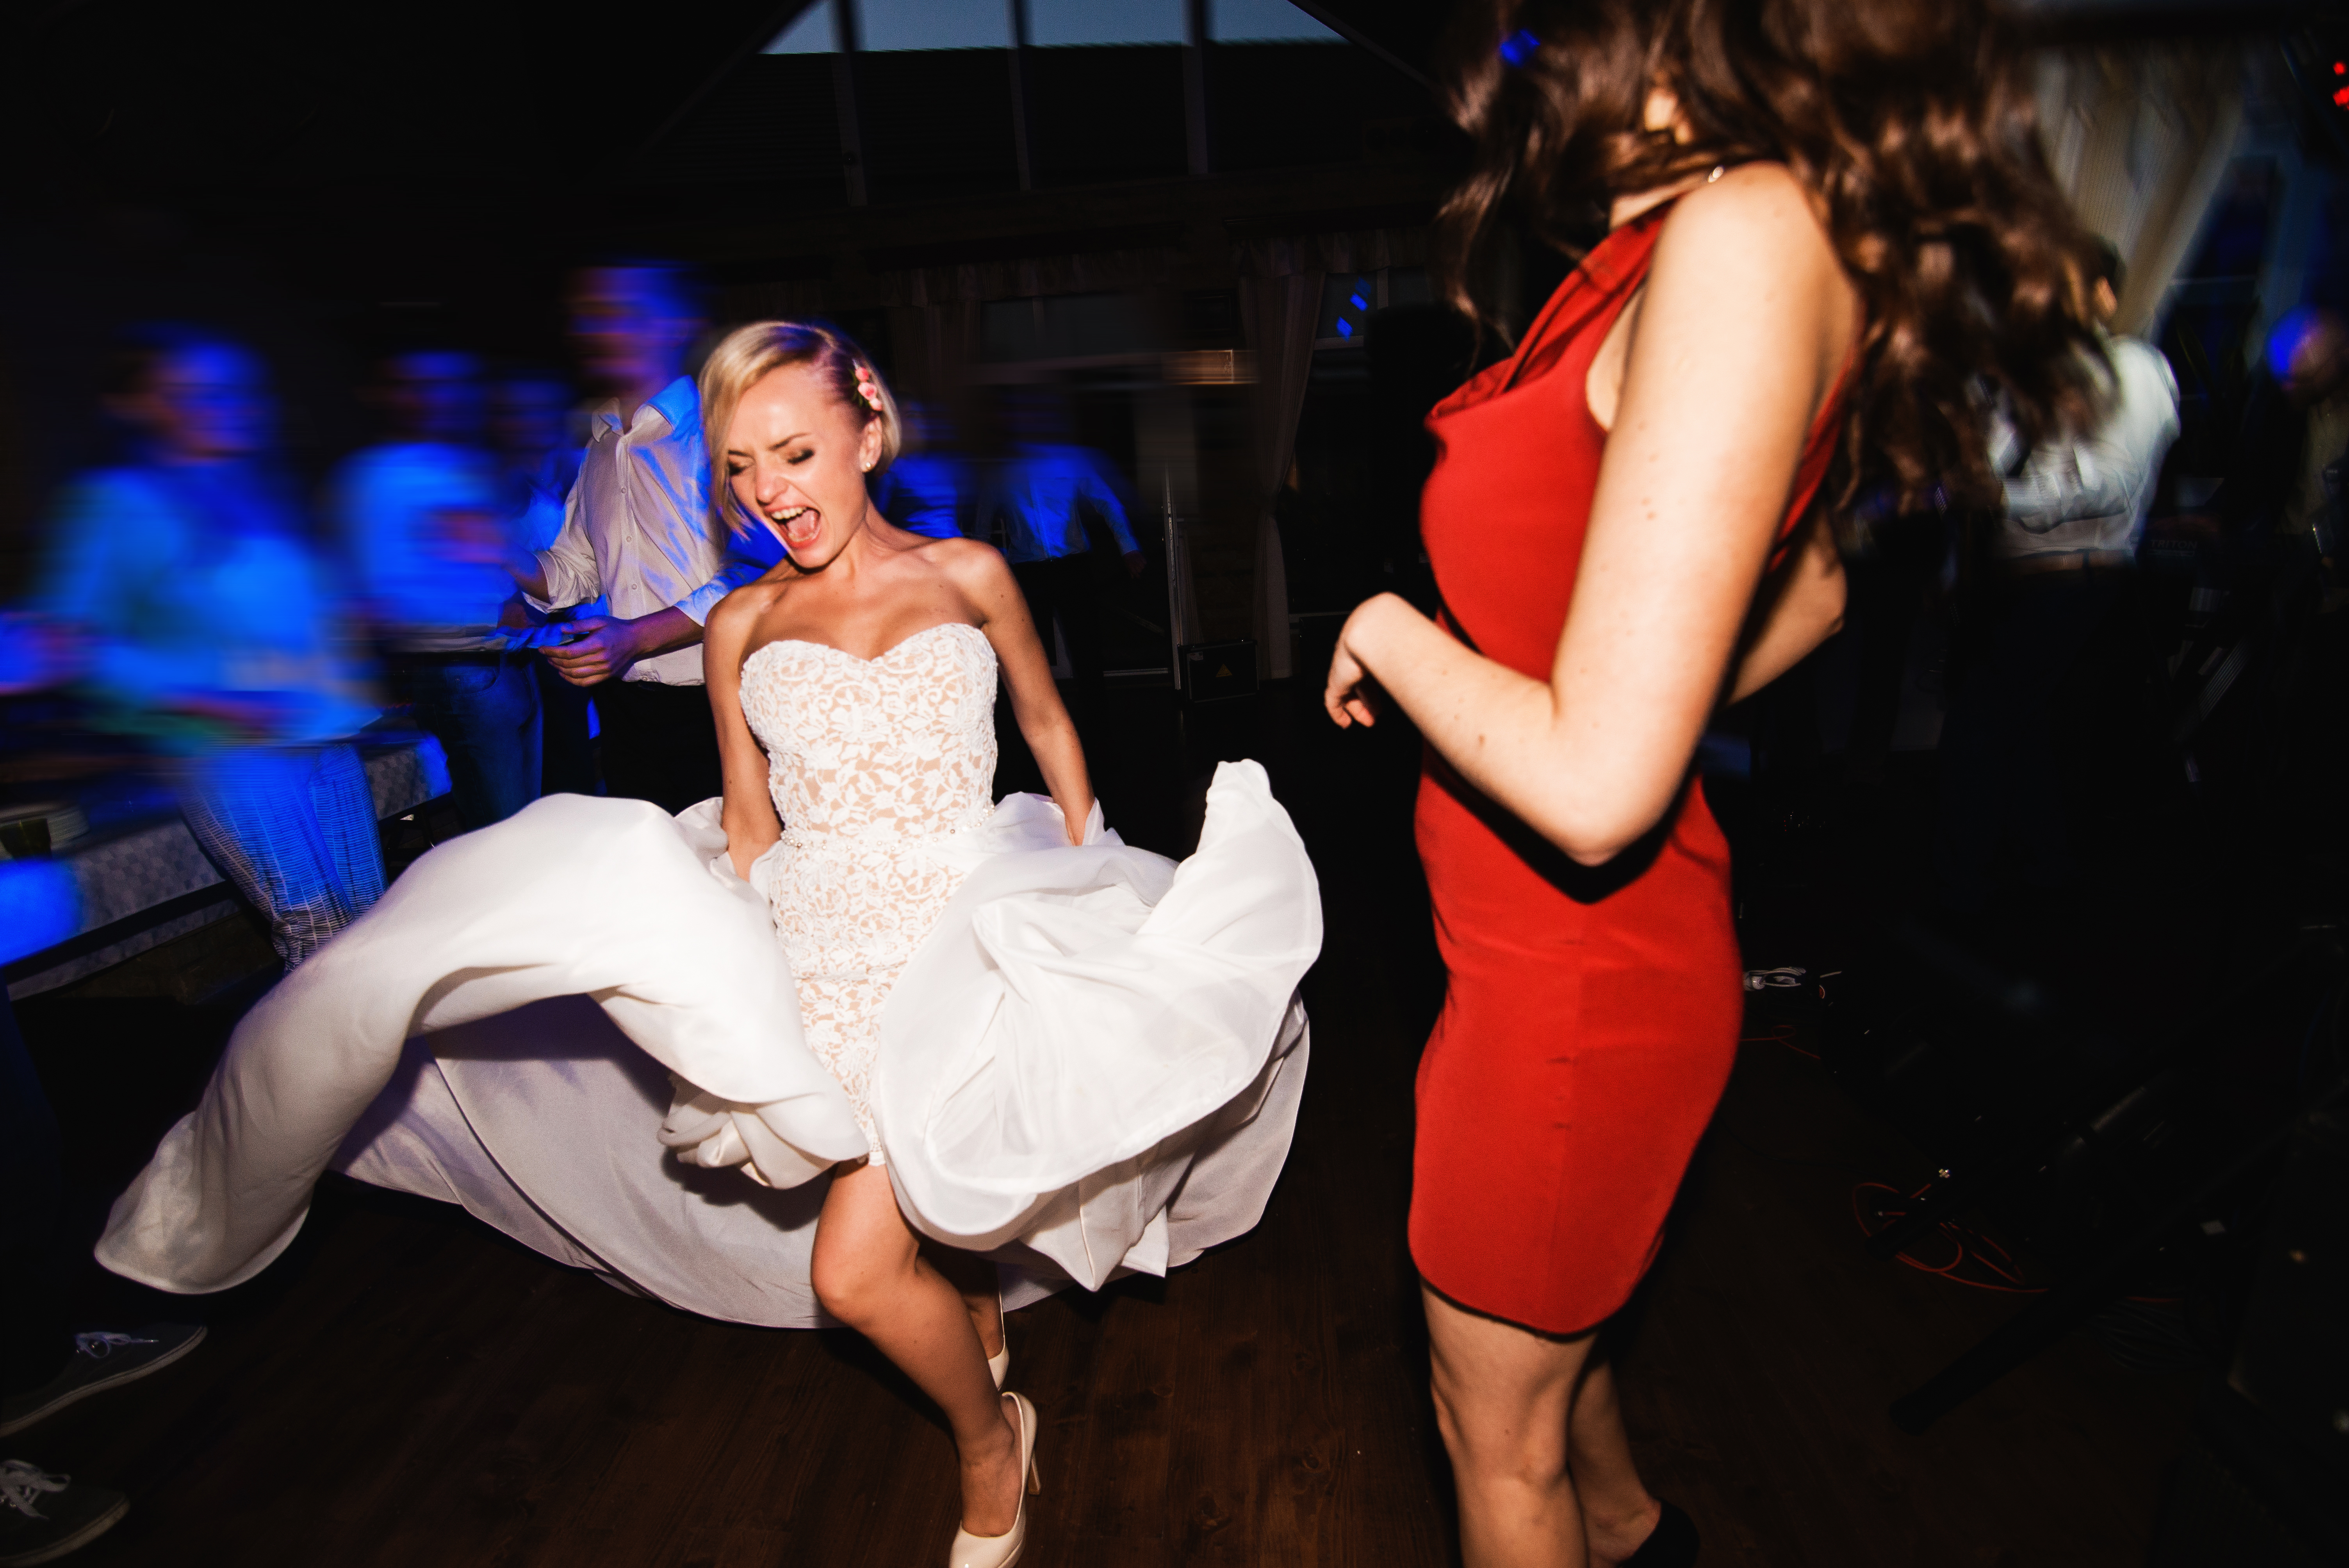 Bride dancing | Source: Shutterstock